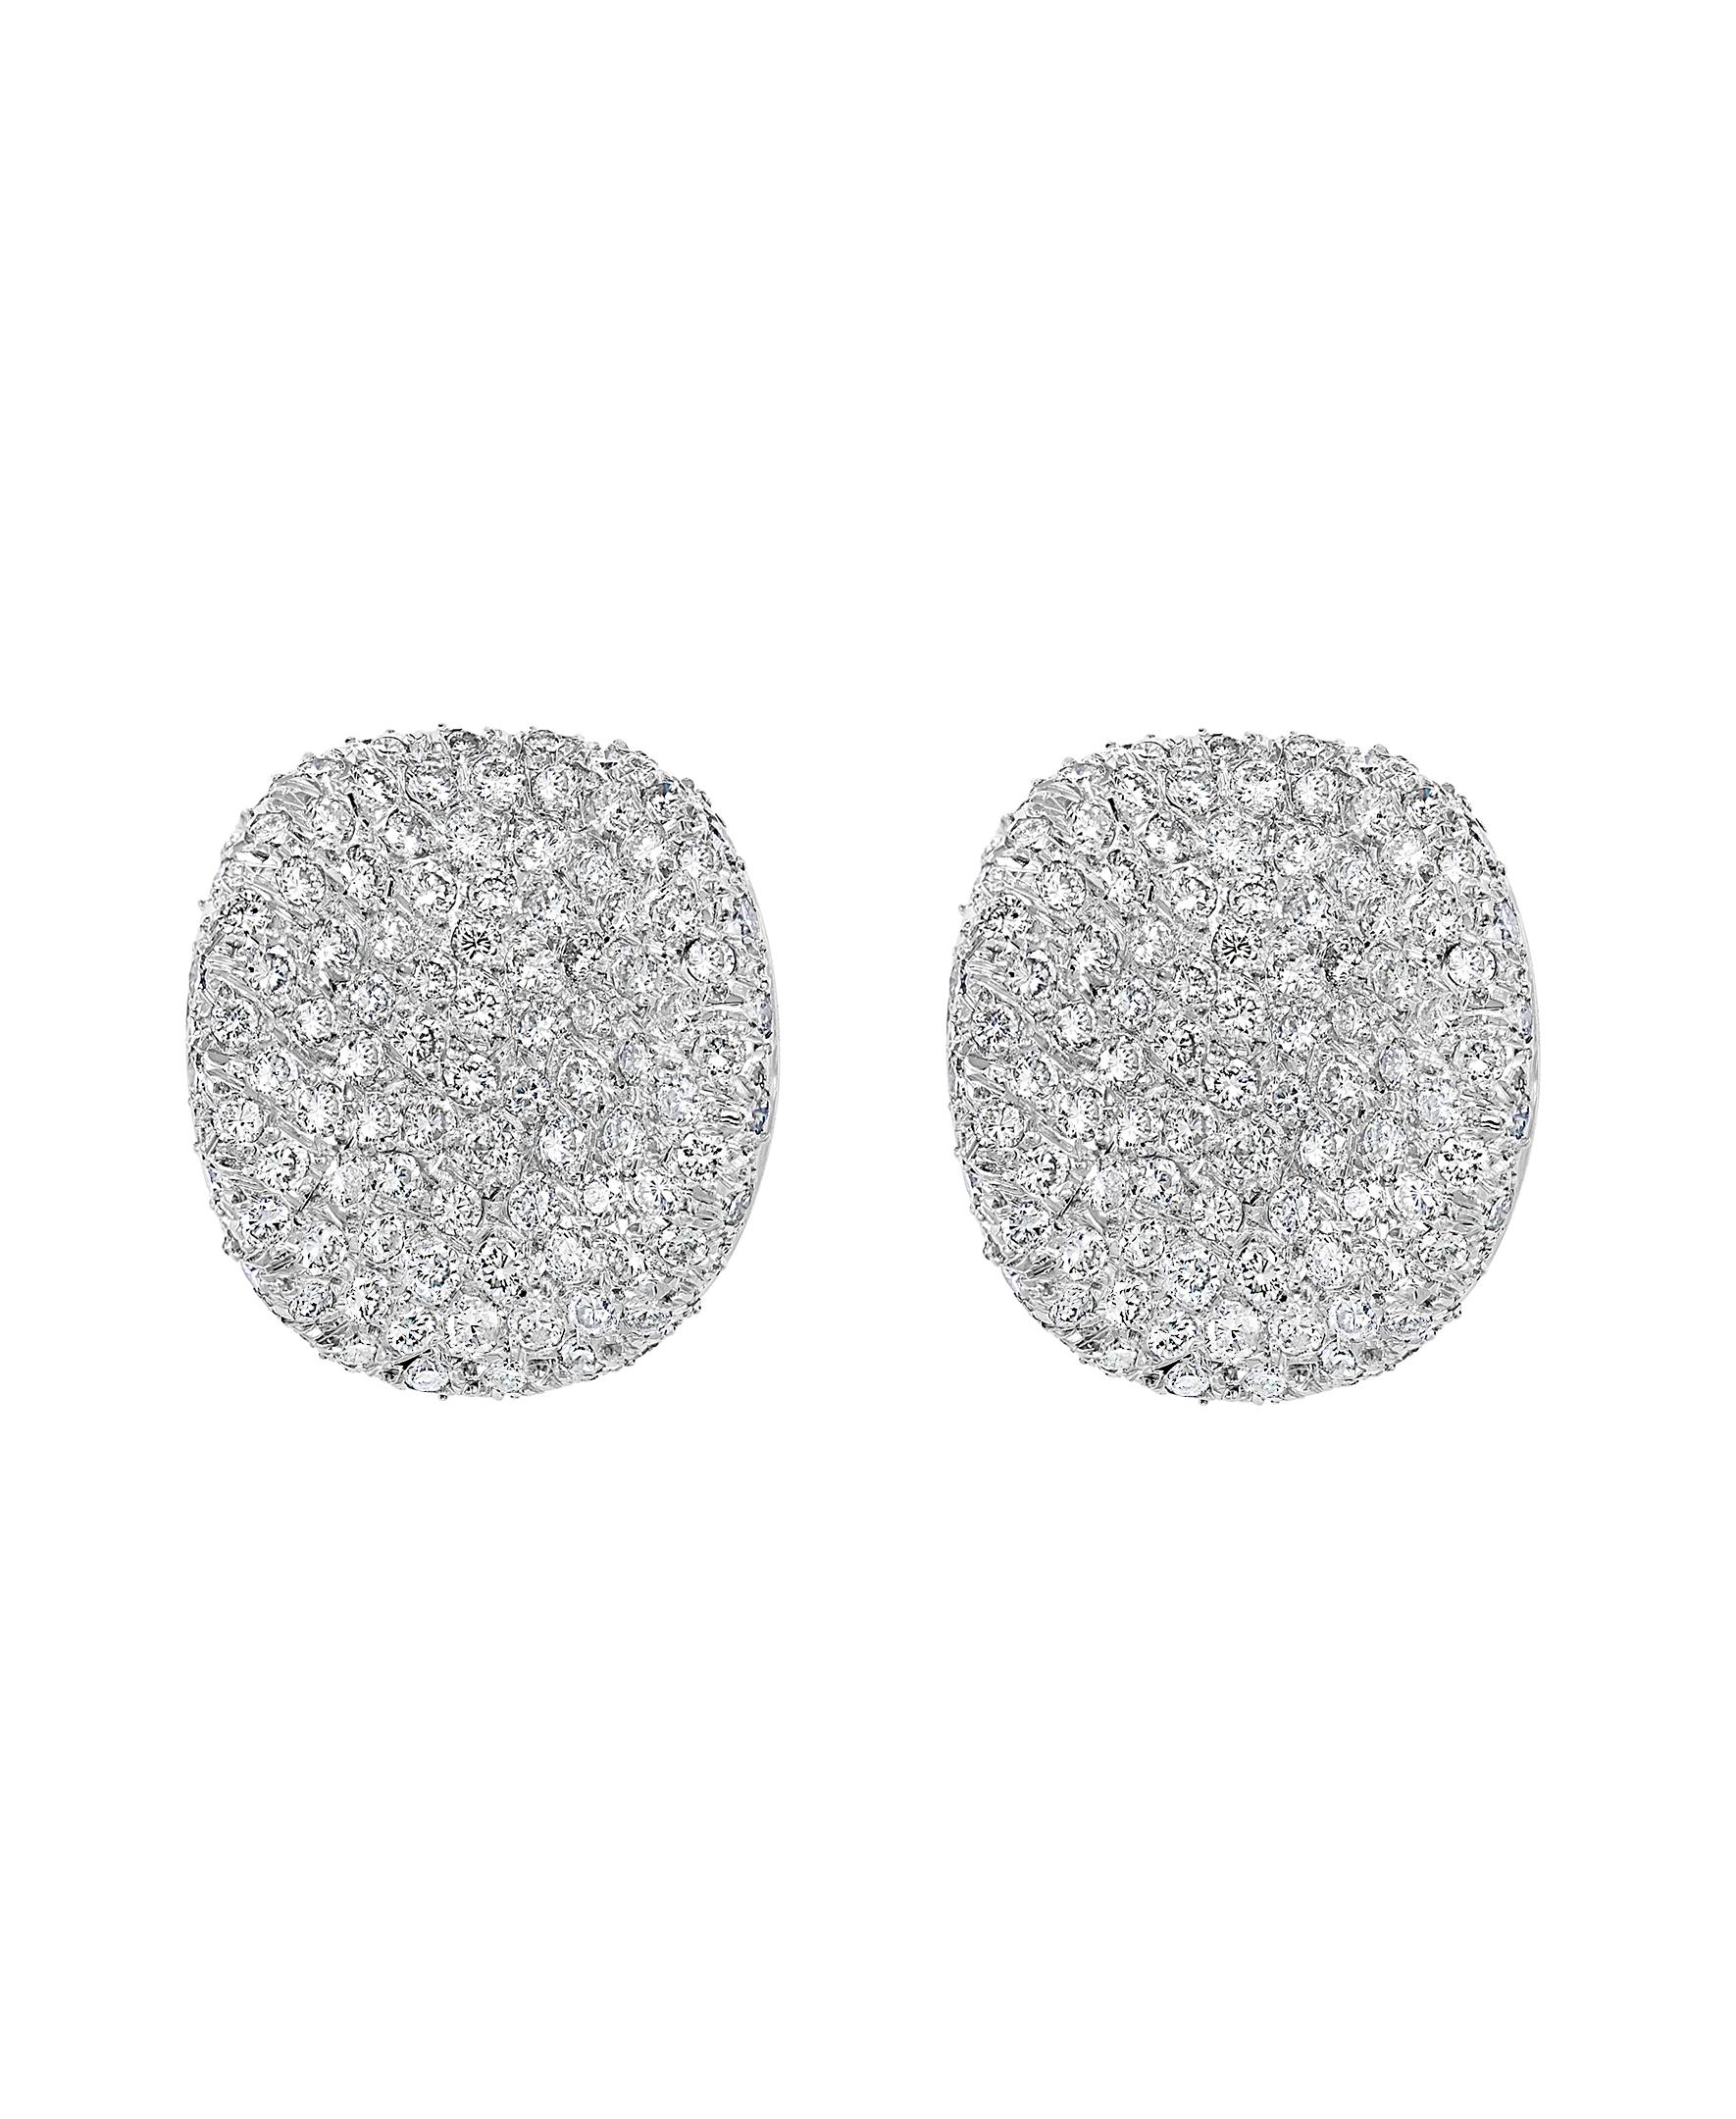 10 carat earrings